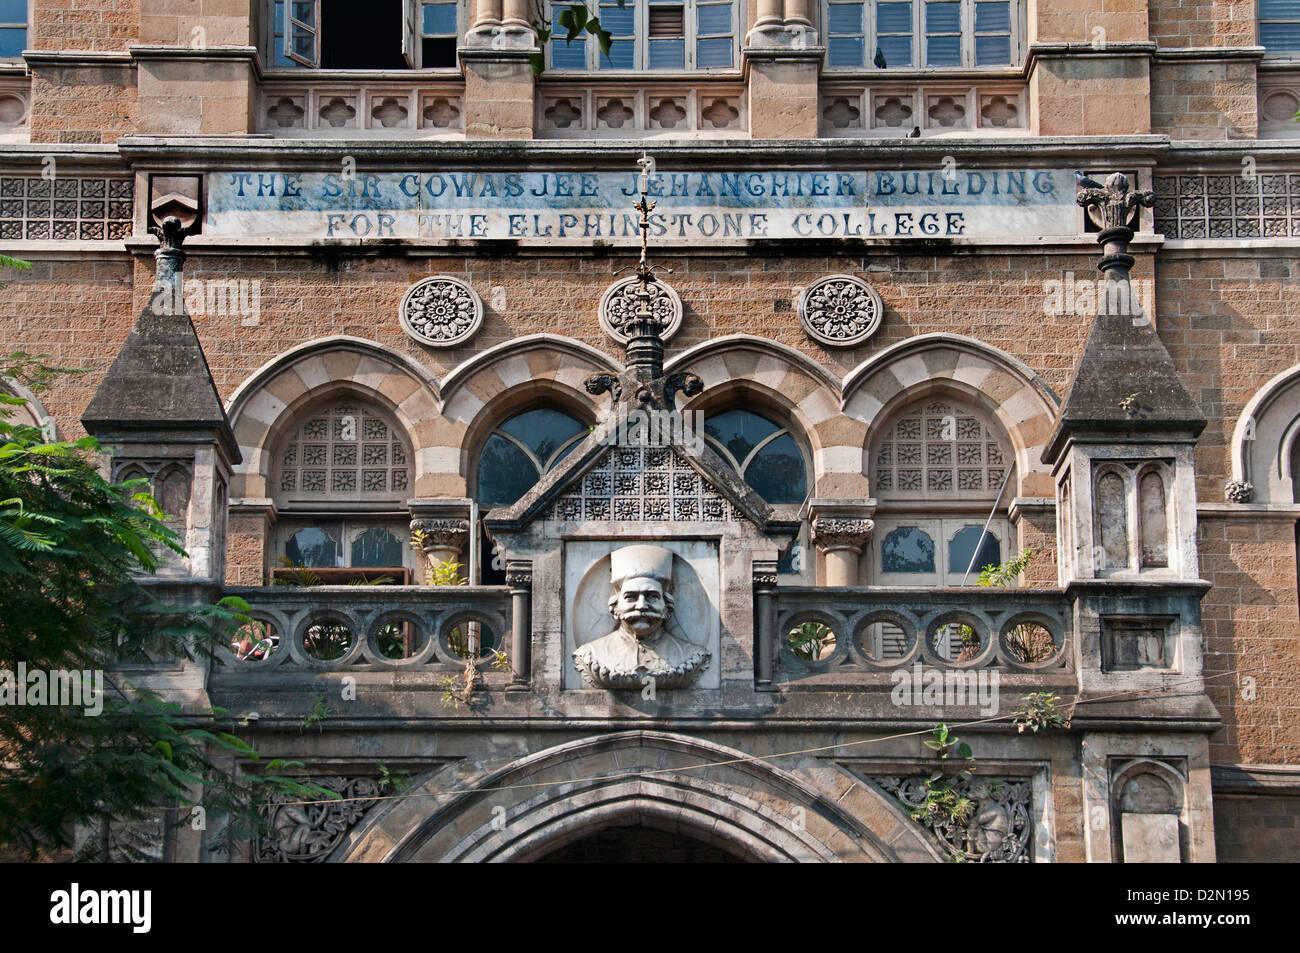 Sir Cowasjee Jehangier edificio - Elphinstone College più antico college dell'Università di Mumbai il Mahatma Gandhi MG Road Fort Foto Stock